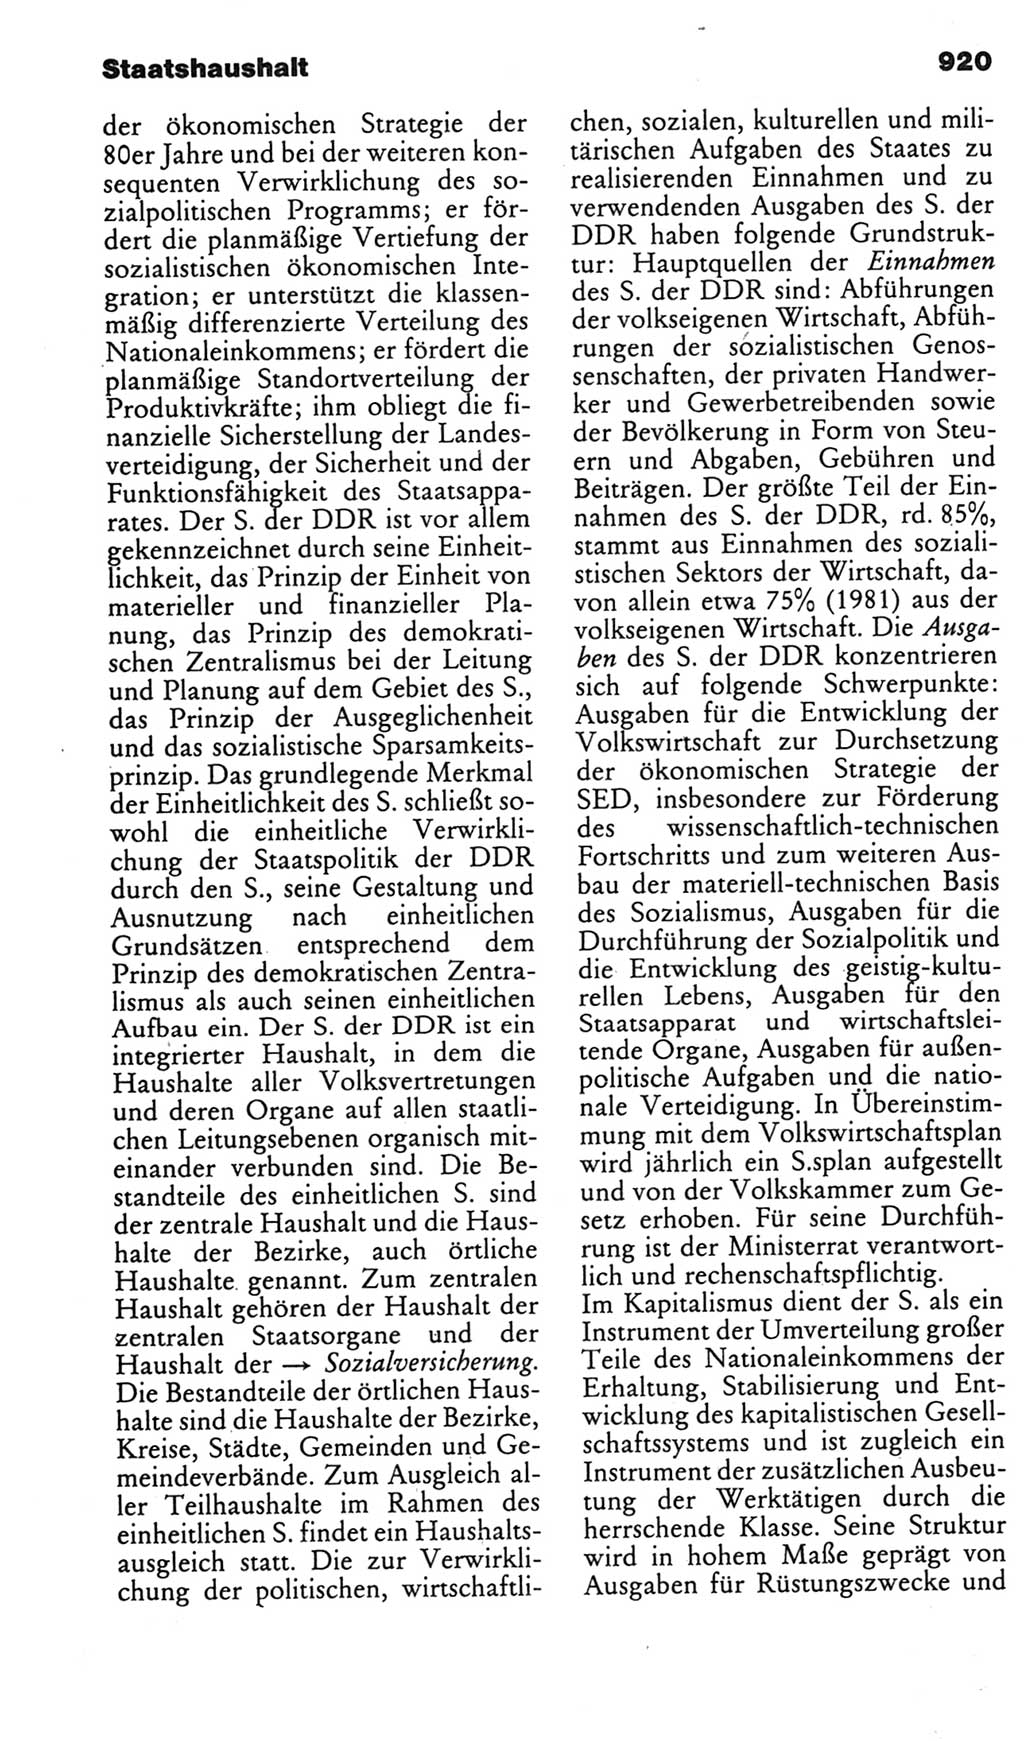 Kleines politisches Wörterbuch [Deutsche Demokratische Republik (DDR)] 1985, Seite 920 (Kl. pol. Wb. DDR 1985, S. 920)